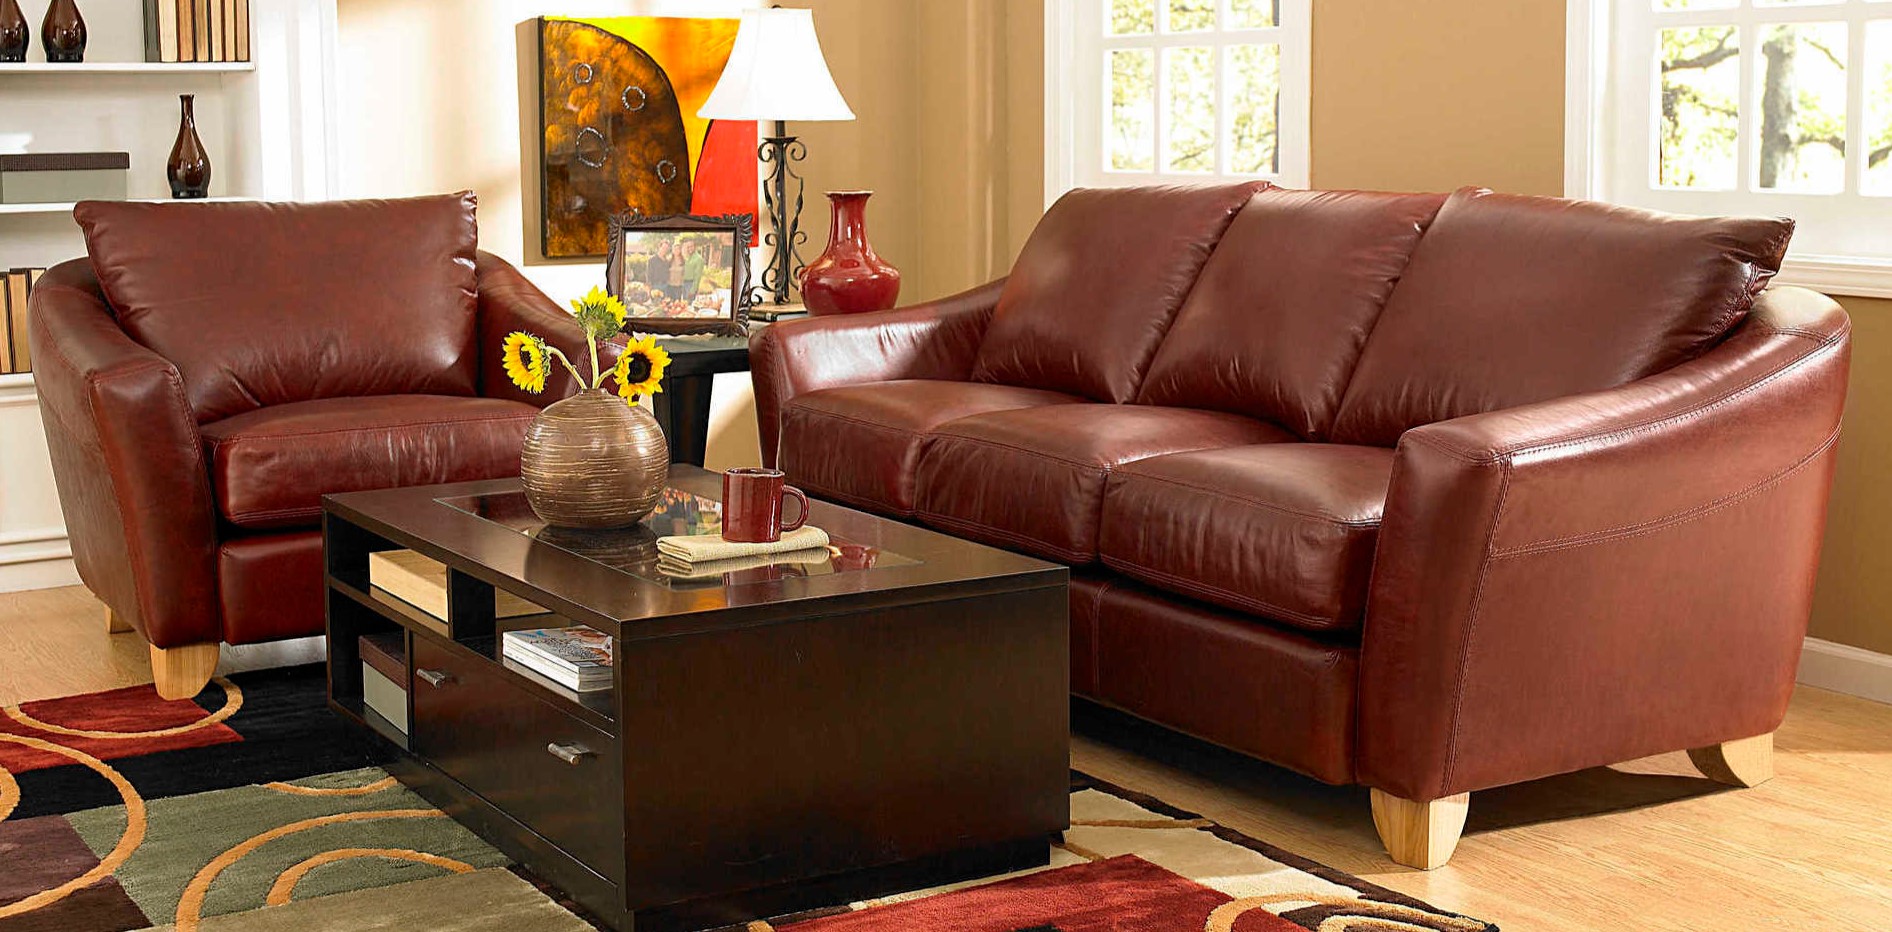 Под цвет обивки дивана можно подобрать кресло в гостиную